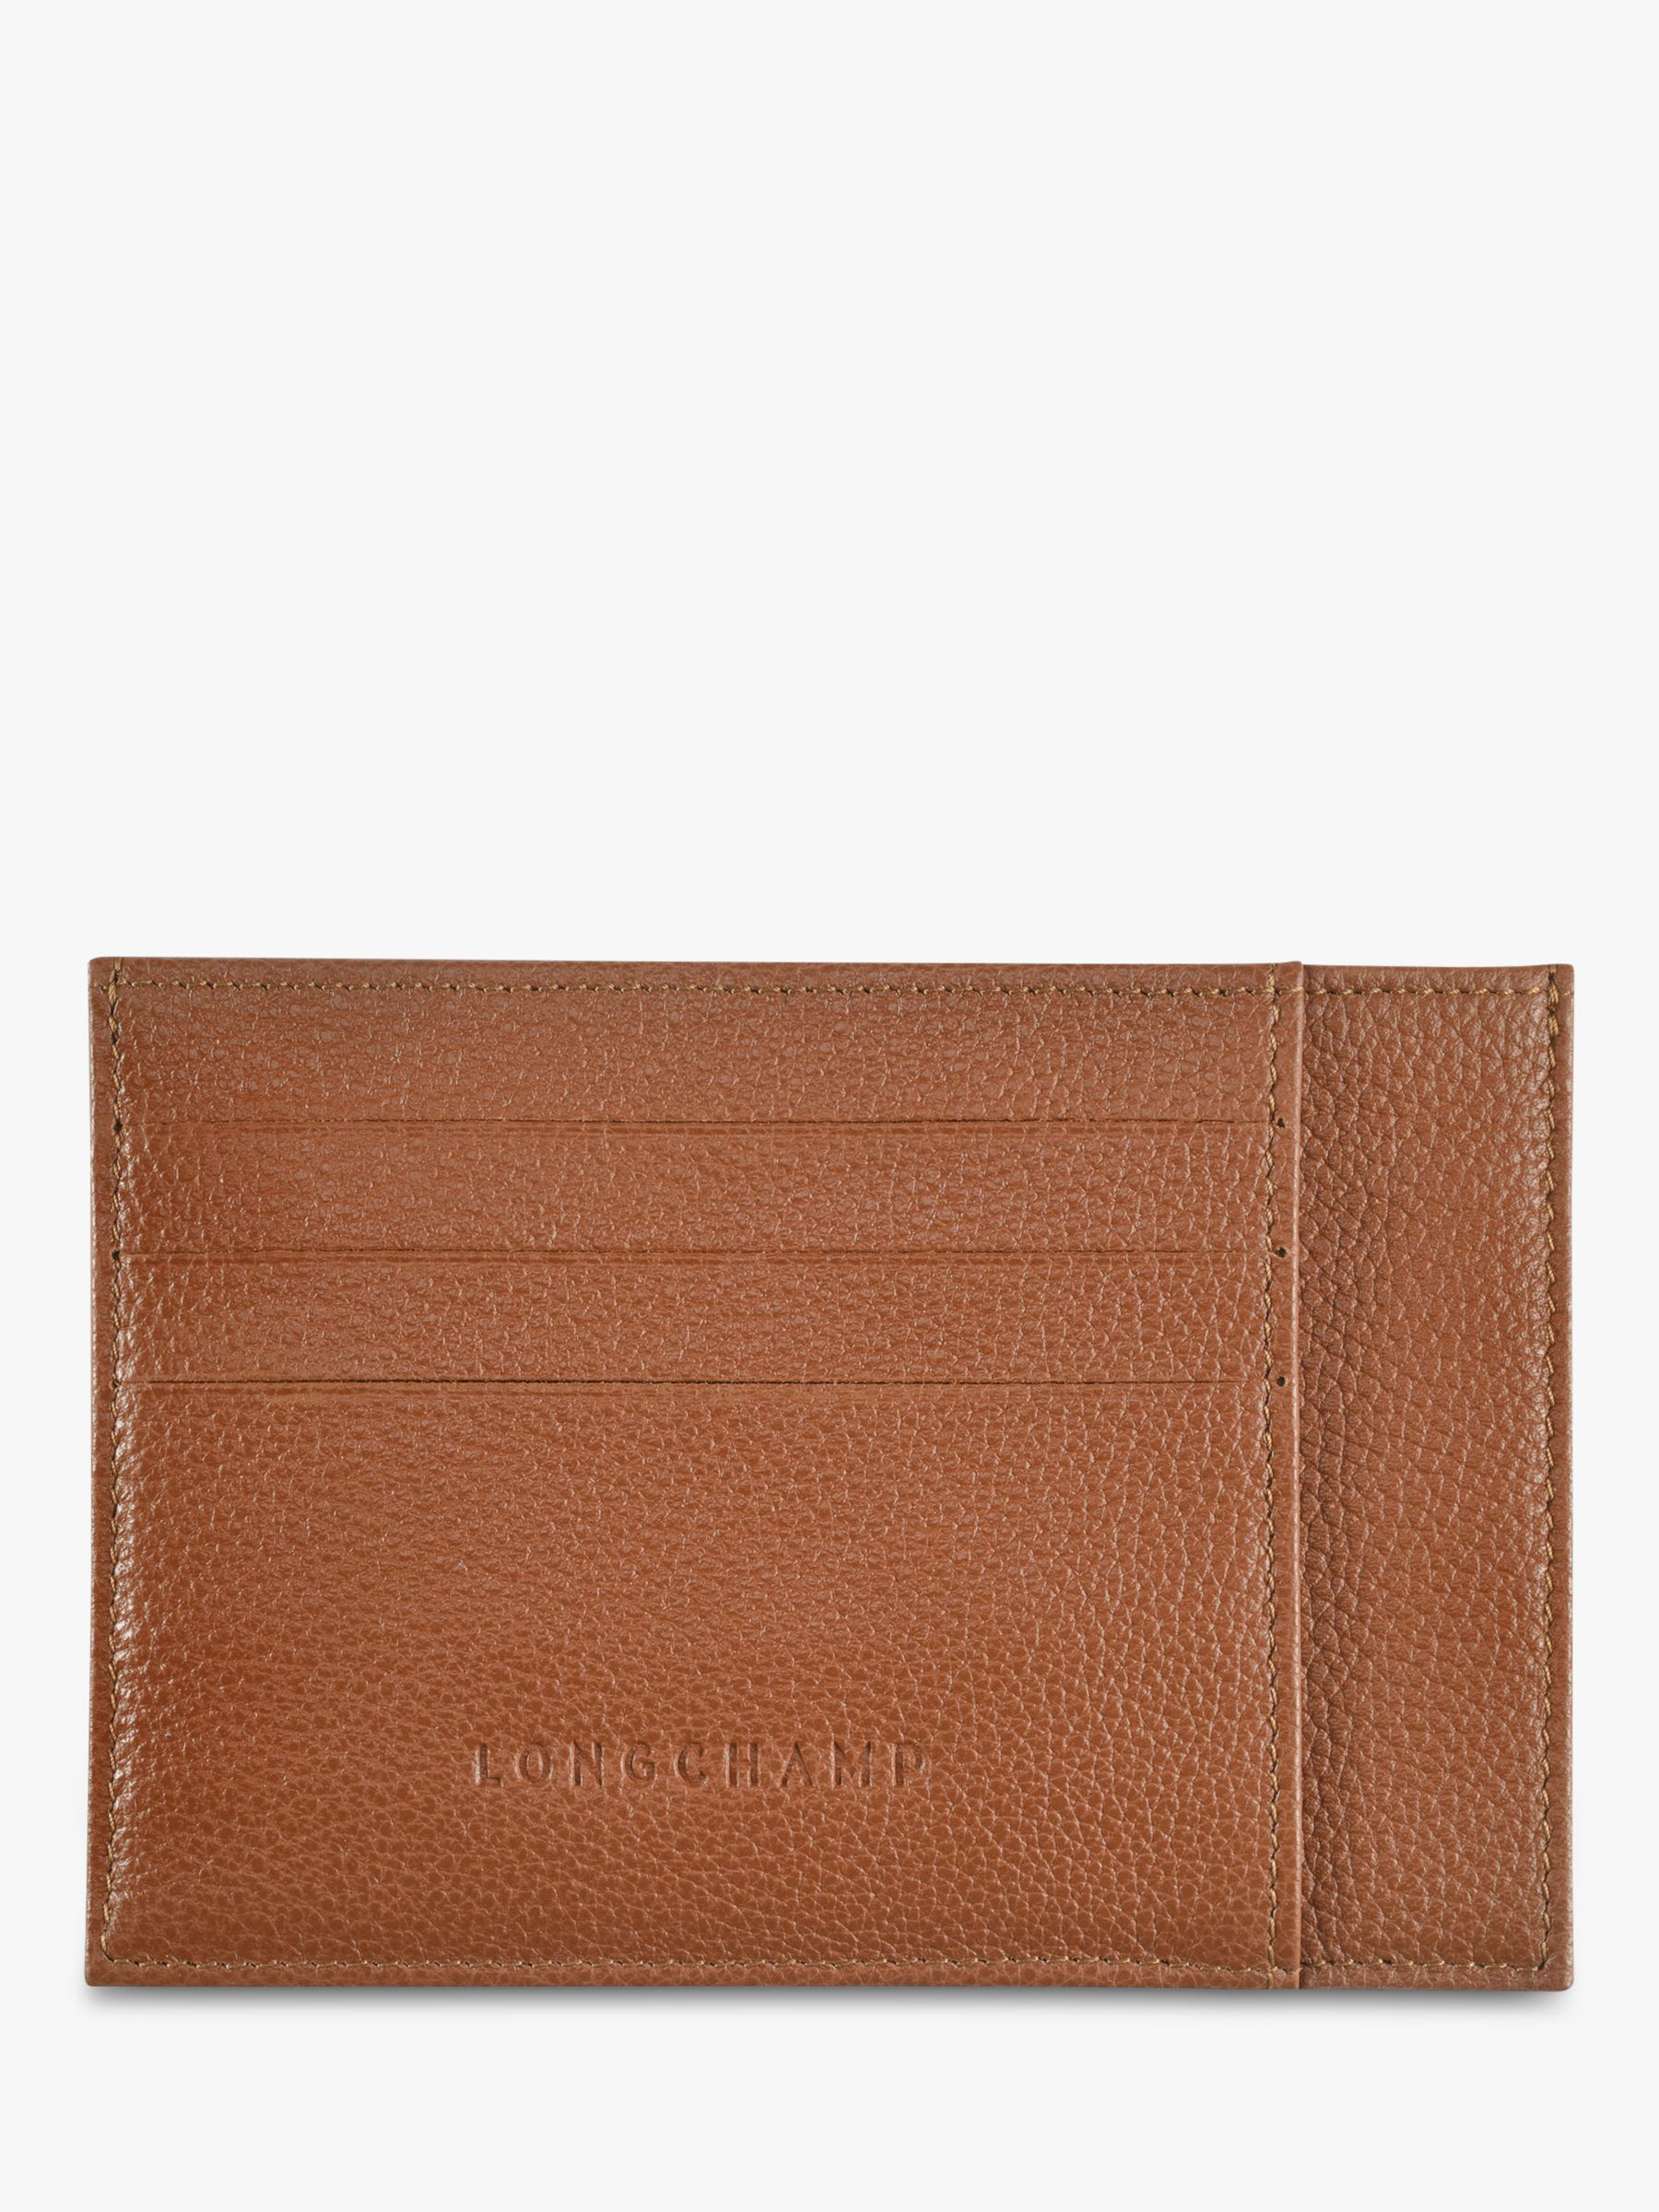 Longchamp Le FoulonnÃ© Leather Card Holder at John Lewis & Partners